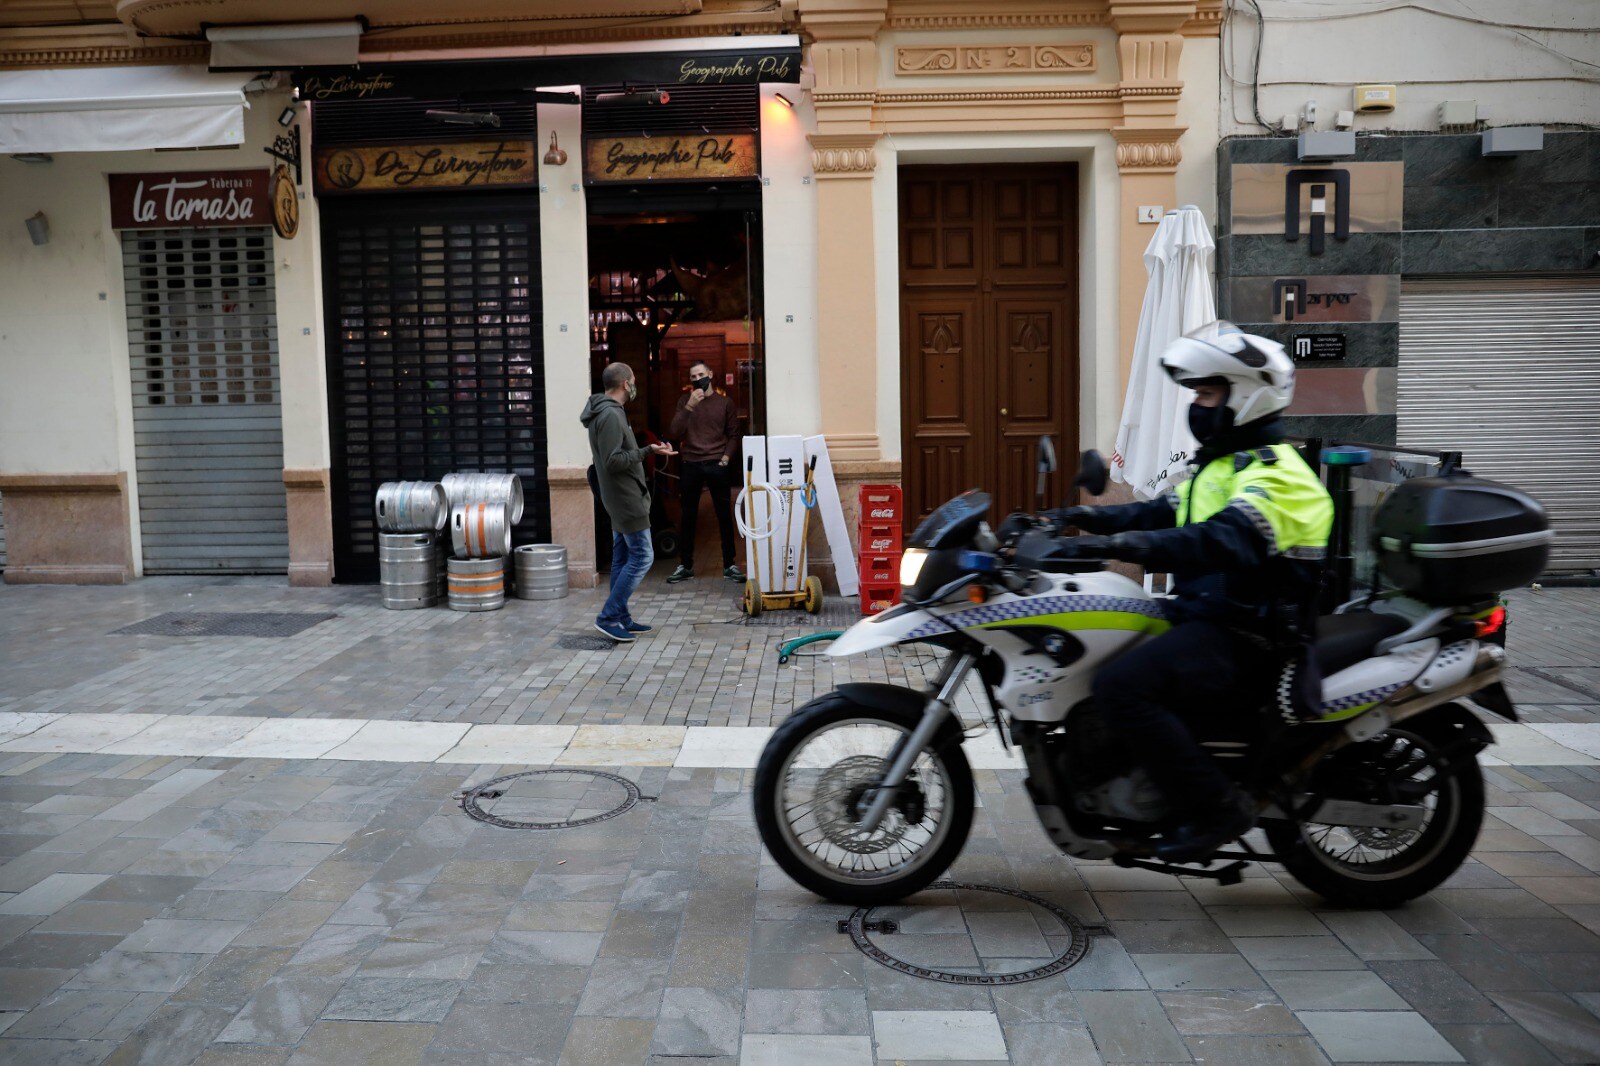 El cierre de los comercios en Málaga deja un Centro mudo y de calles vacías